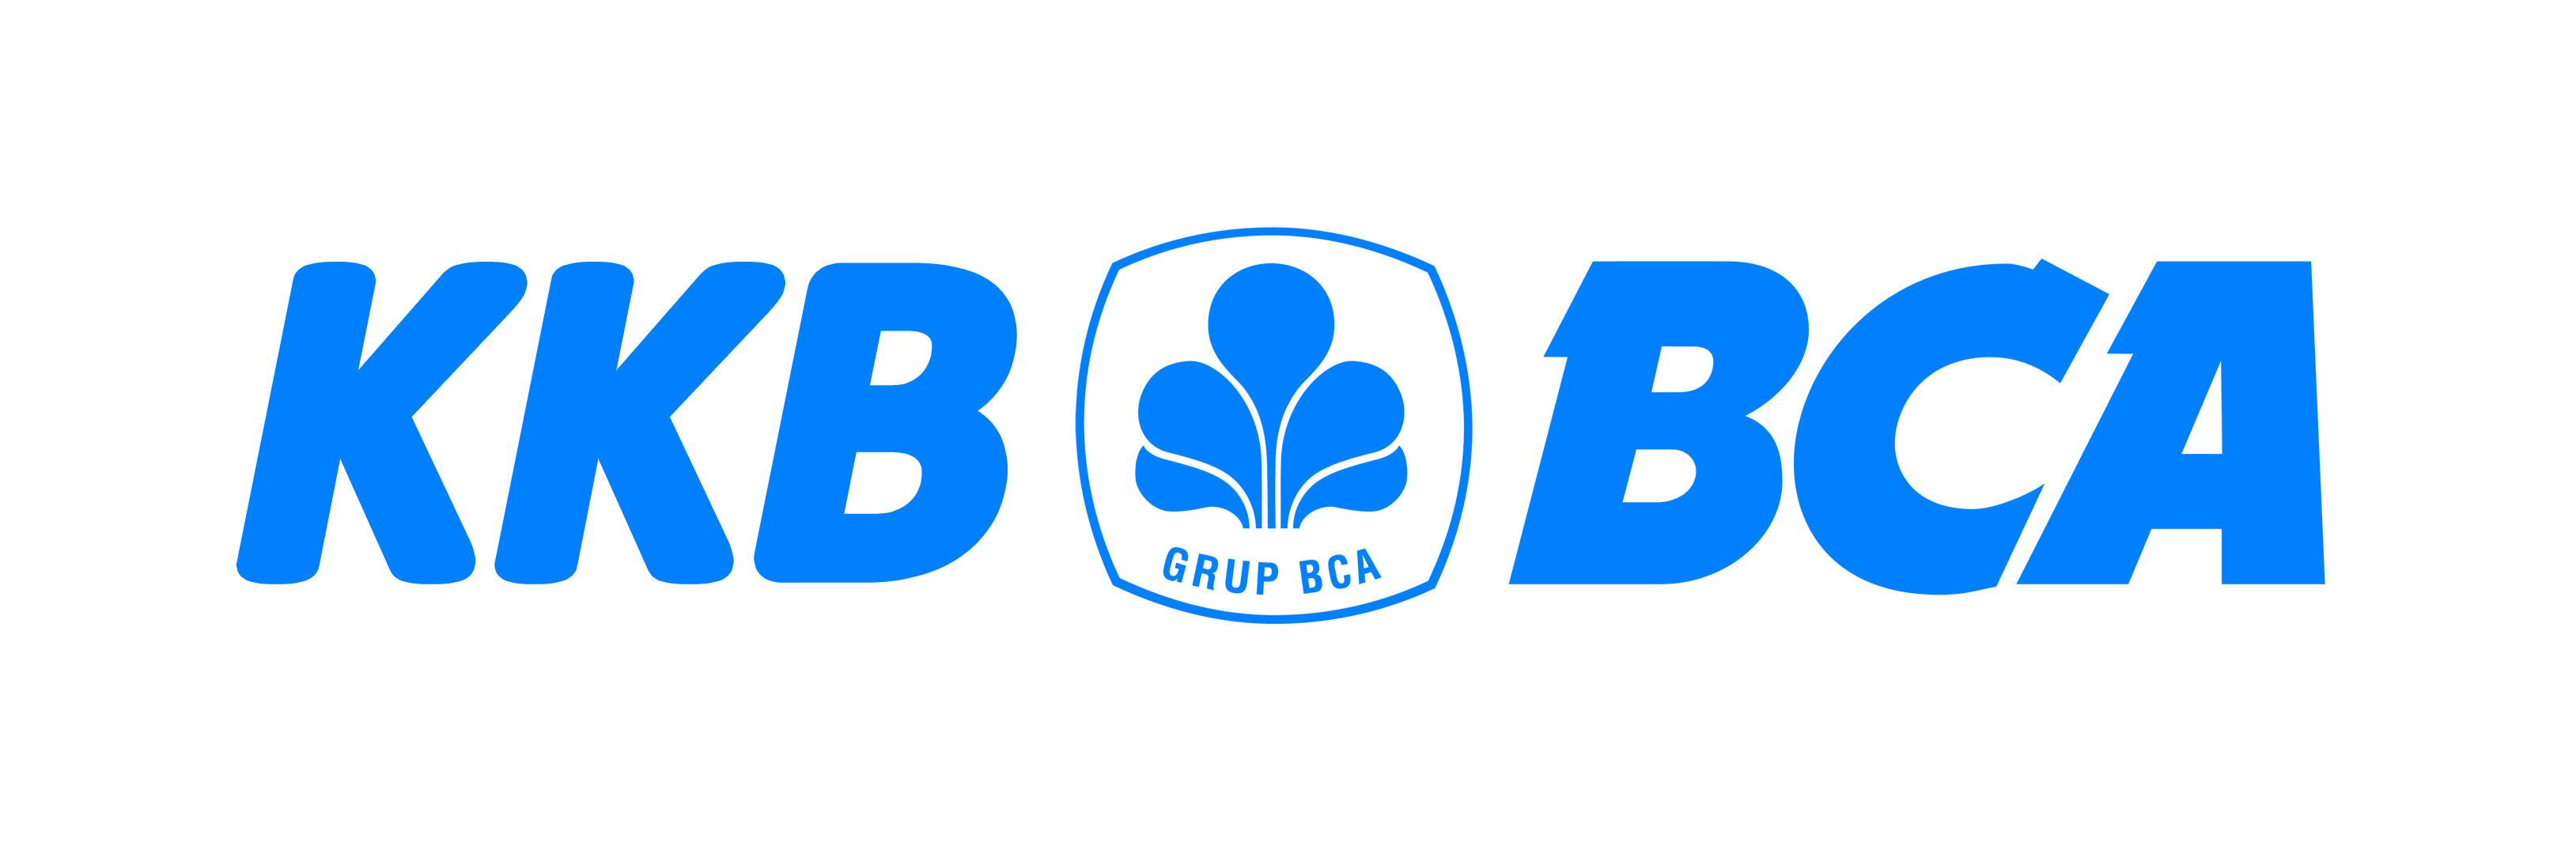 Bca Finance Logo